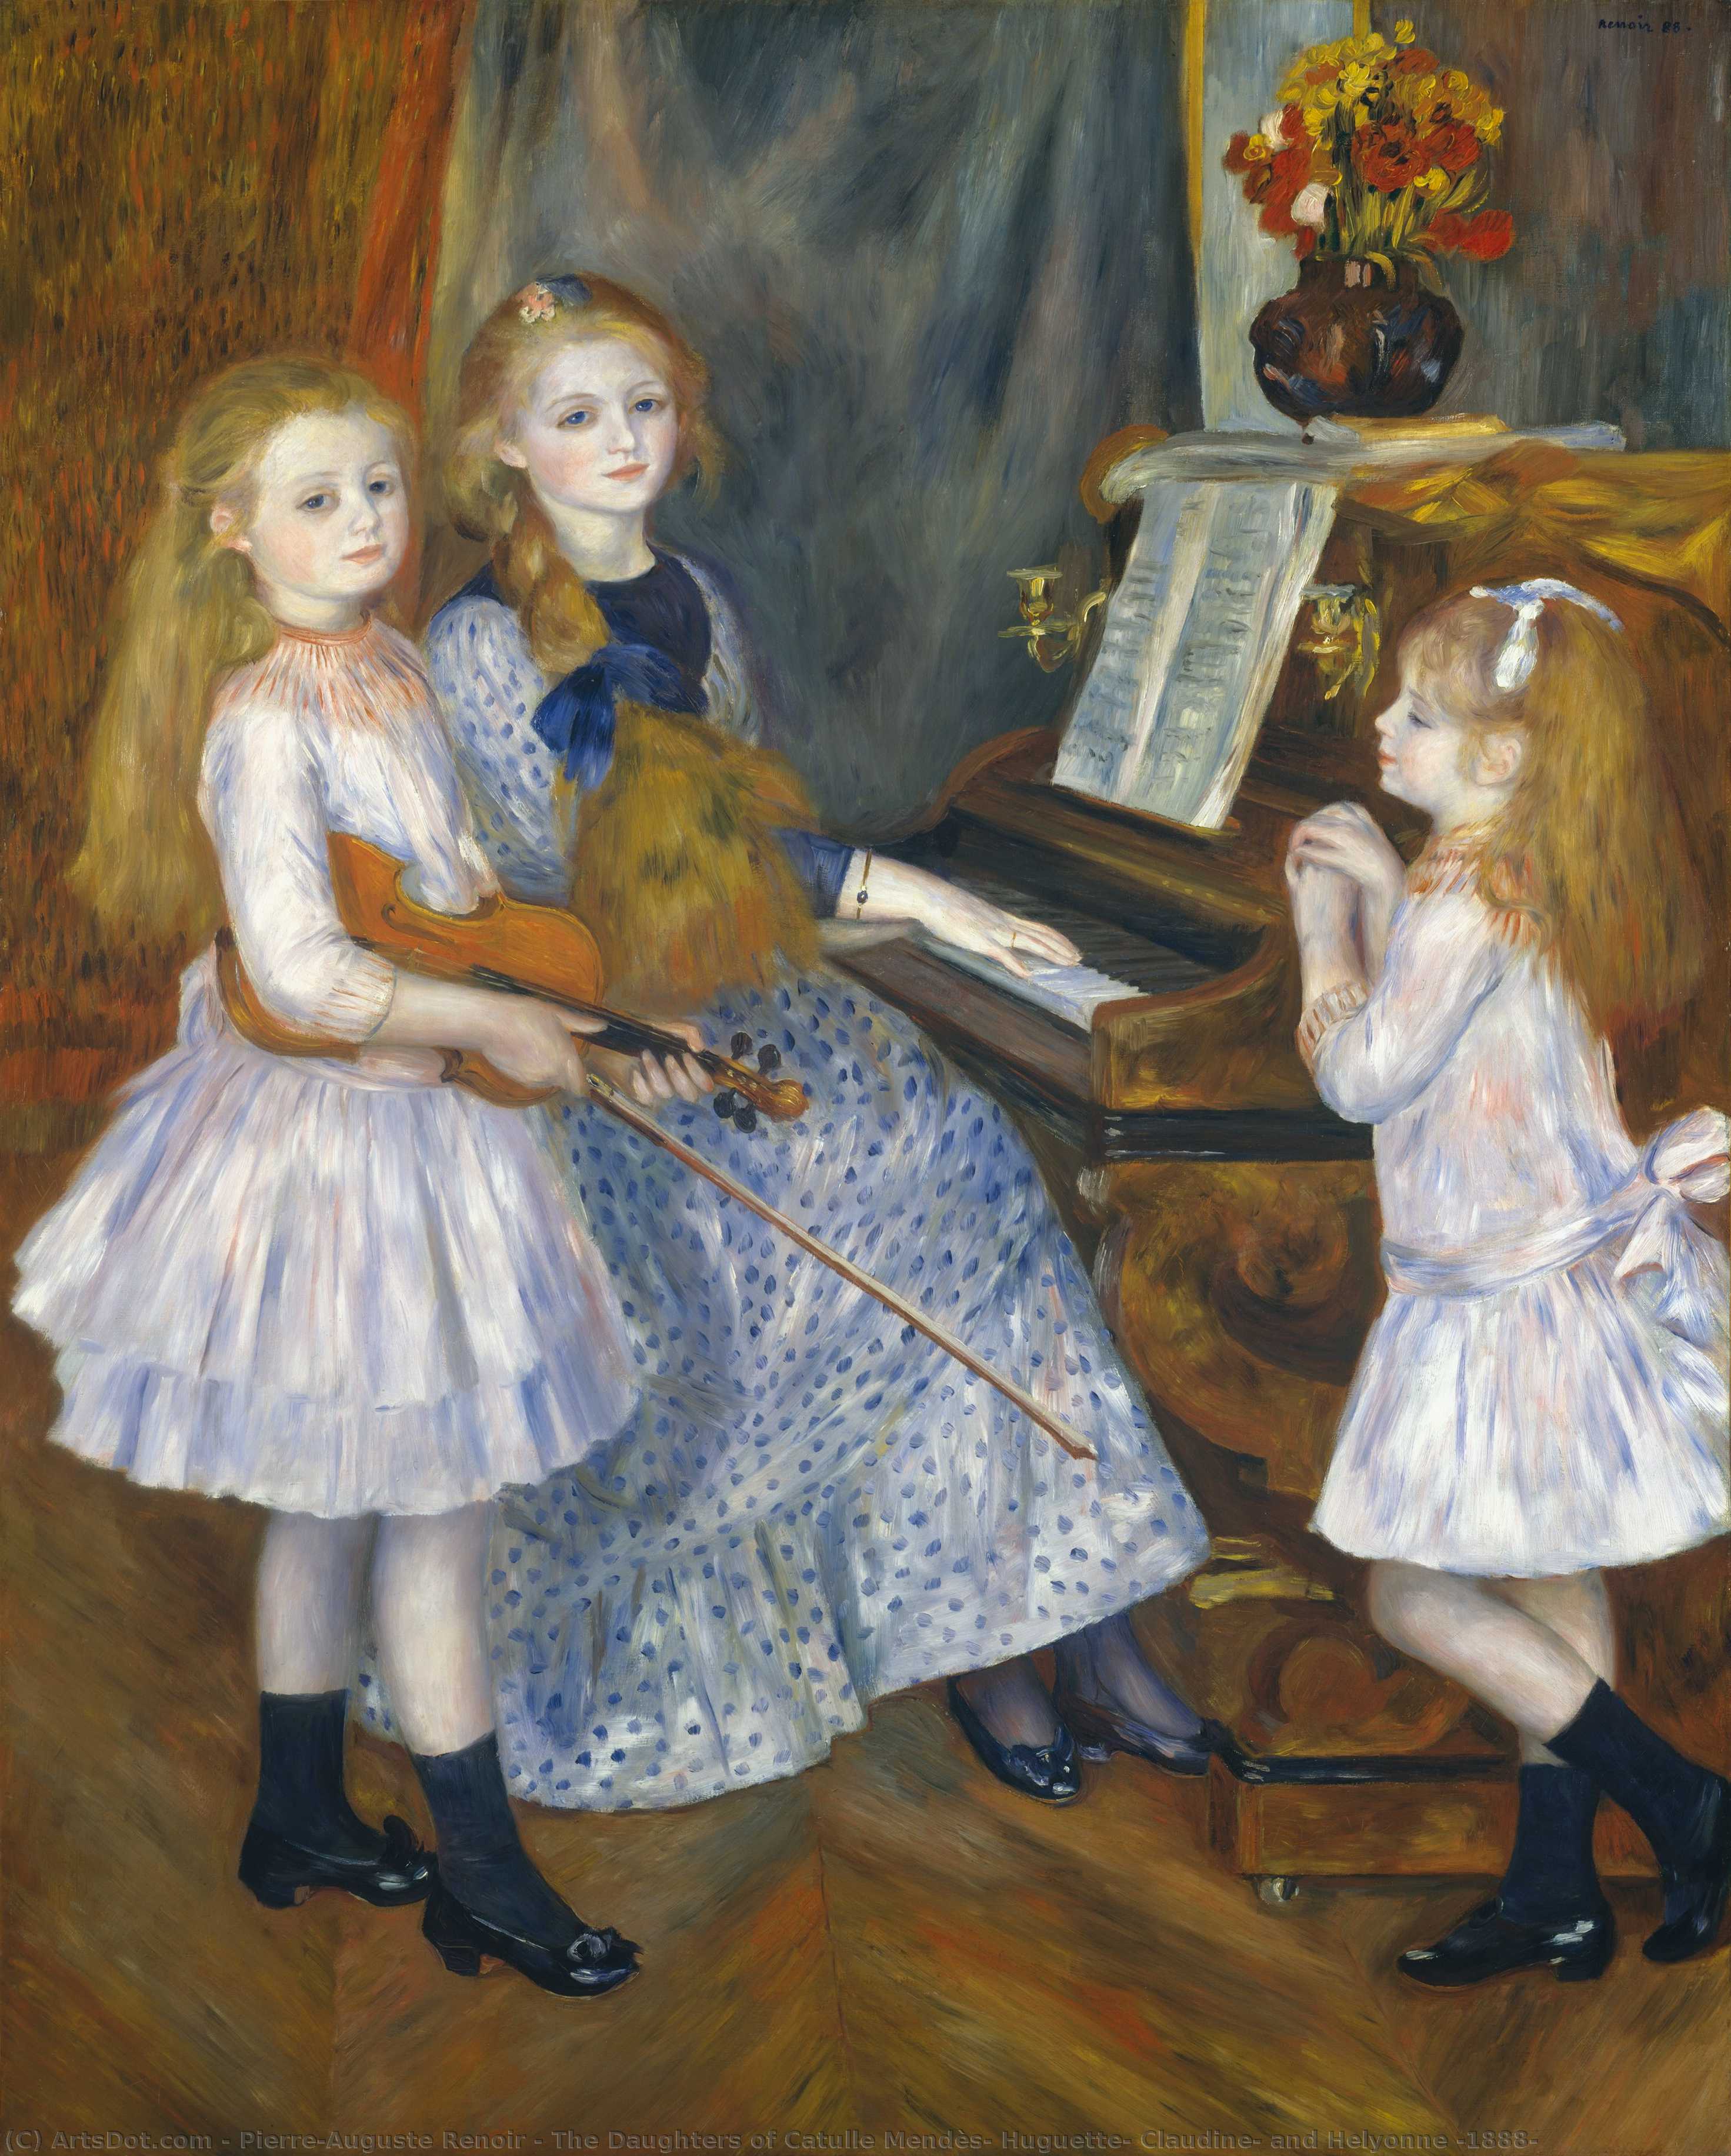 Wikoo.org - موسوعة الفنون الجميلة - اللوحة، العمل الفني Pierre-Auguste Renoir - The Daughters of Catulle Mendès, Huguette, Claudine, and Helyonne (1888)